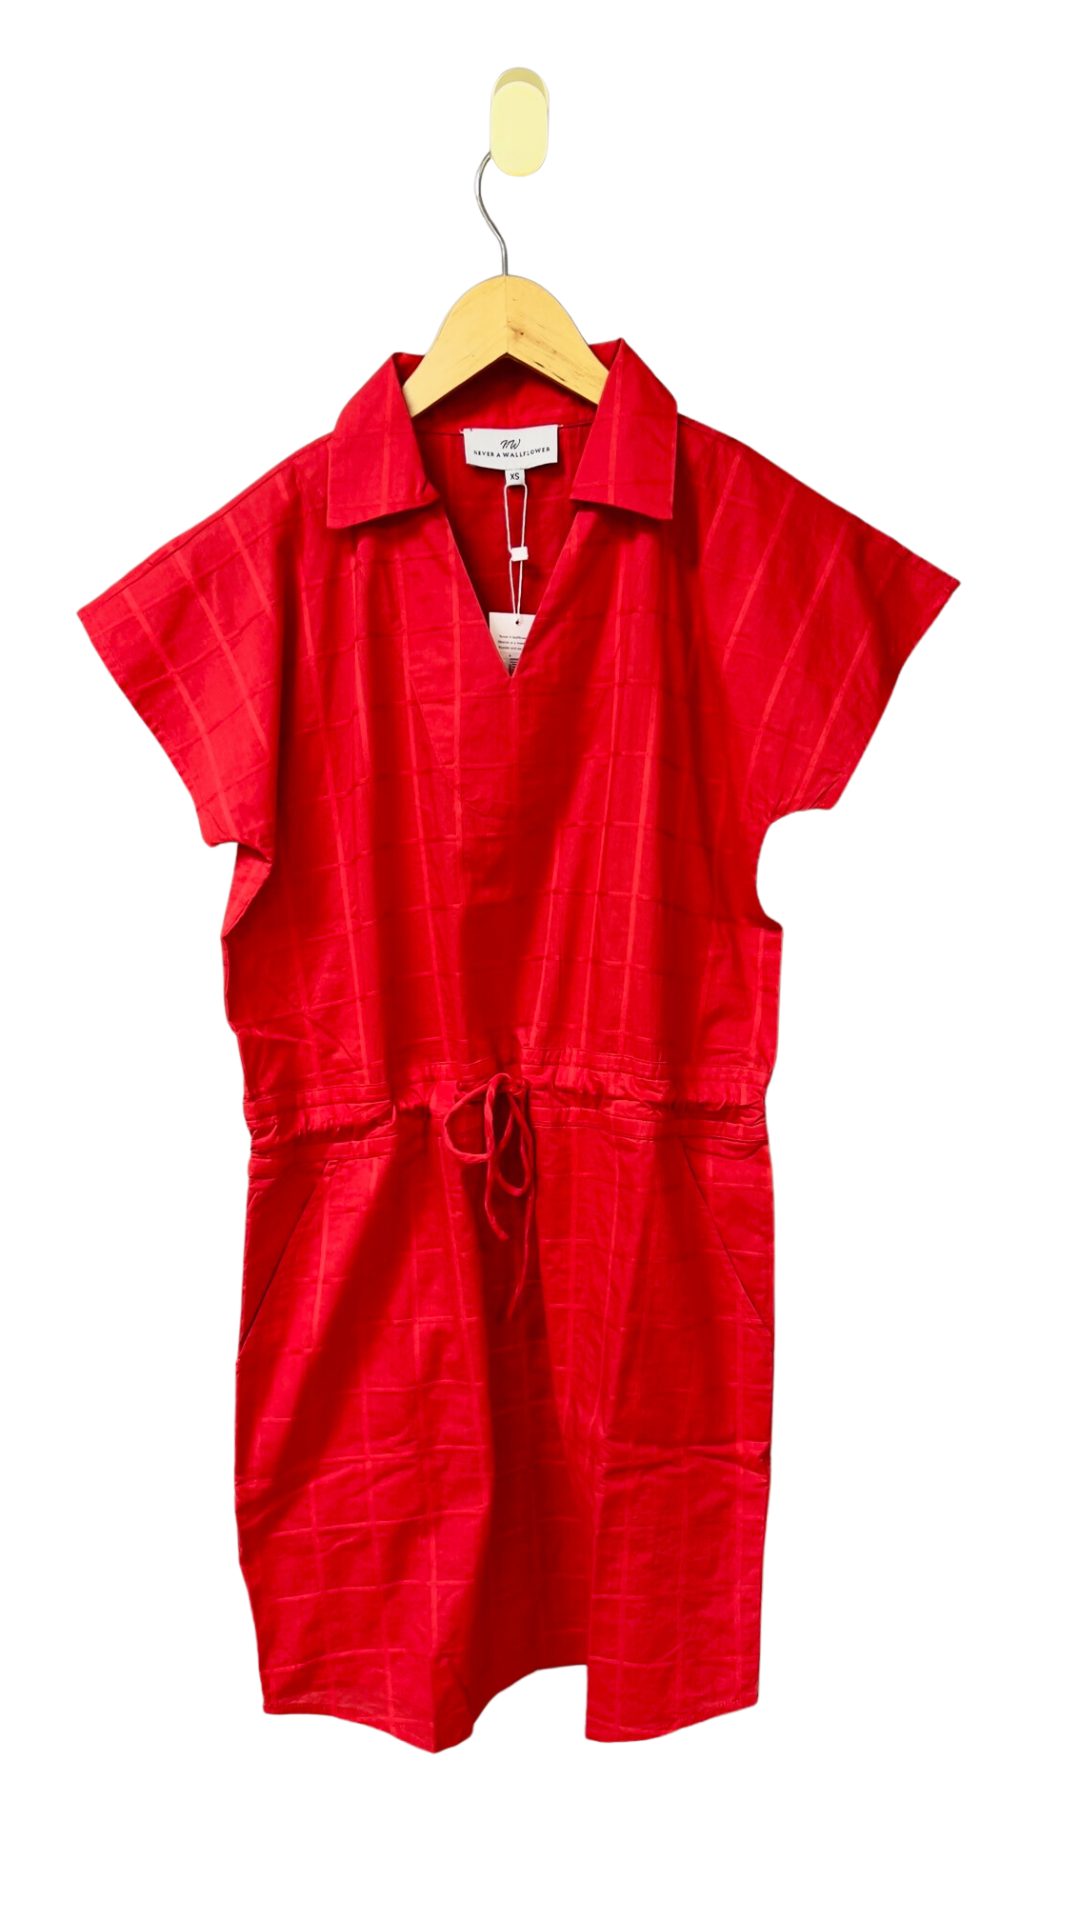 Track Dress in Red Windowpane